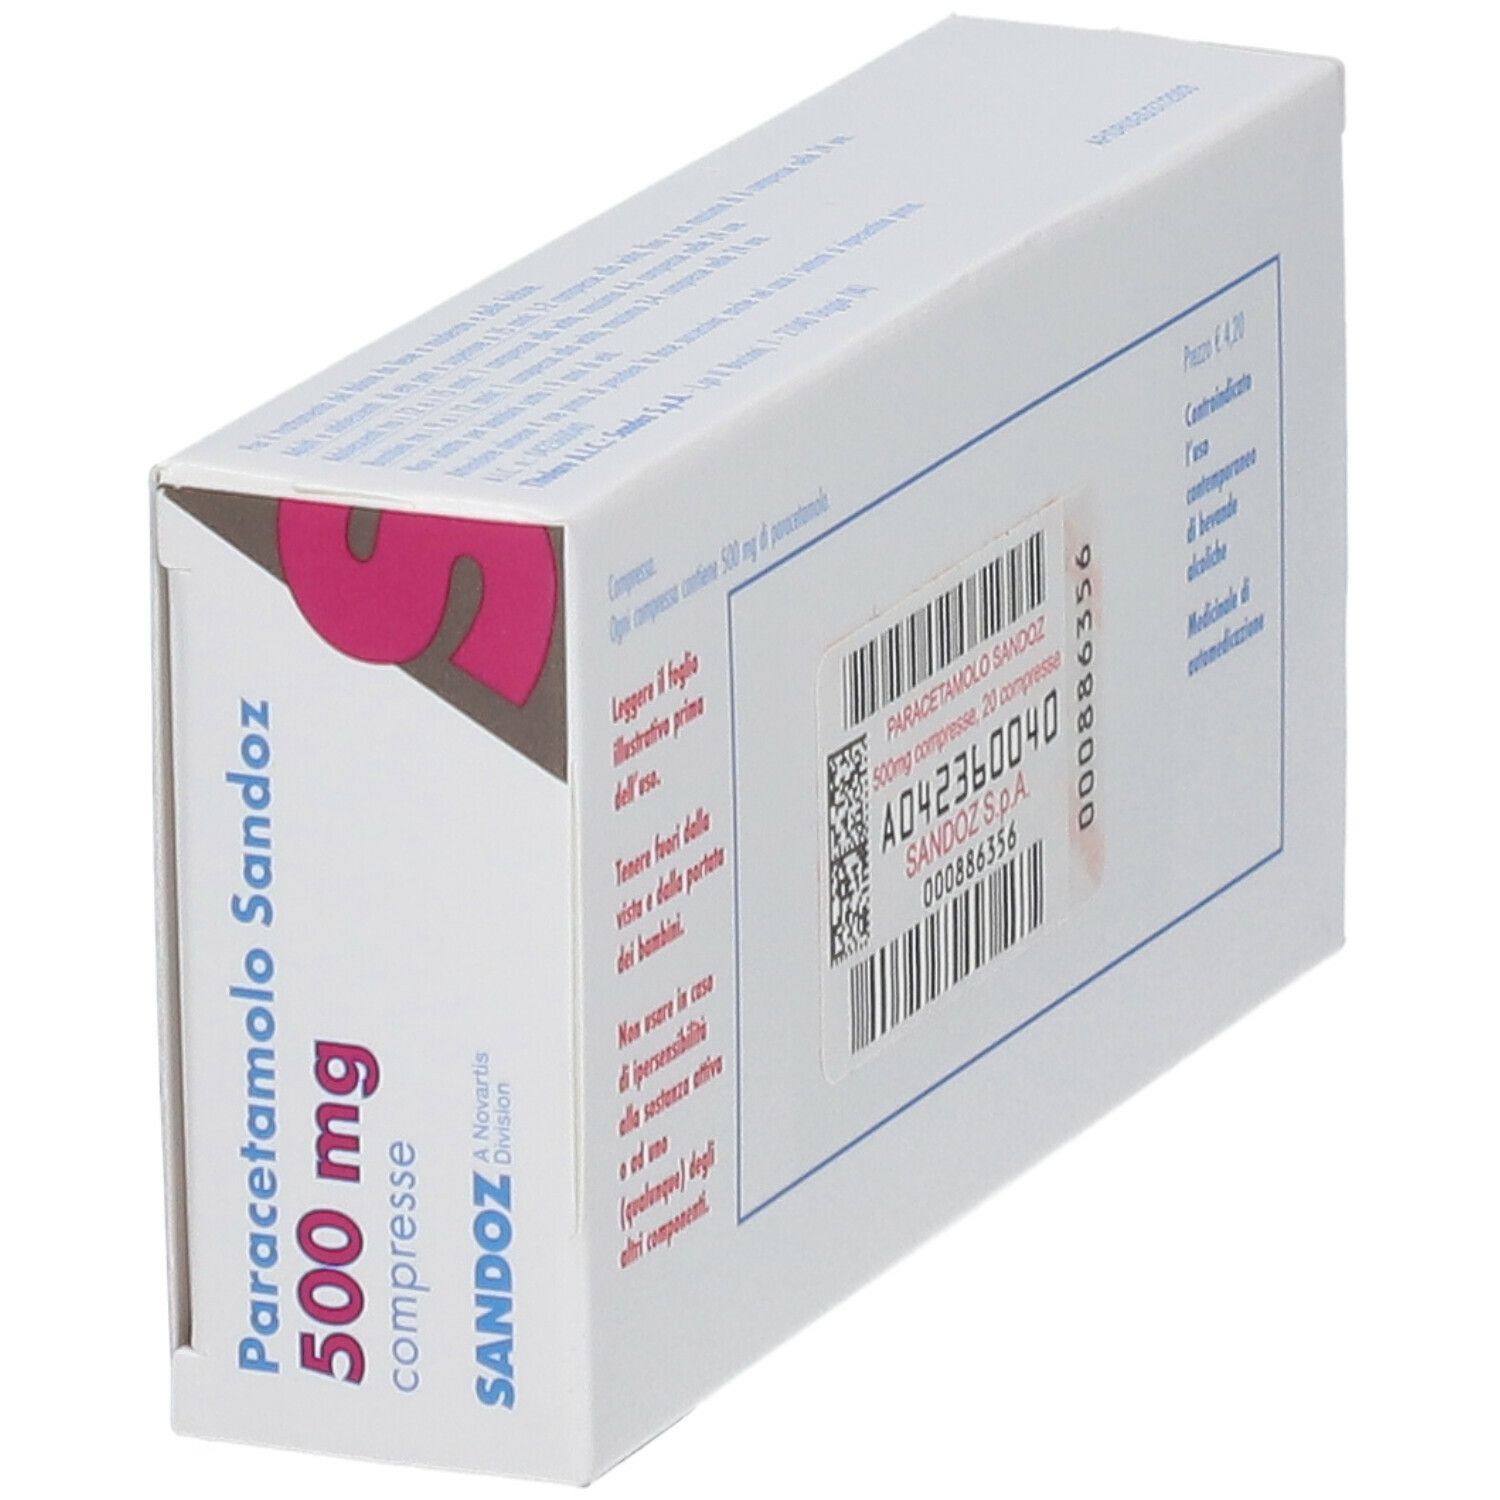 Paracetamolo Sandoz 500 mg Compresse